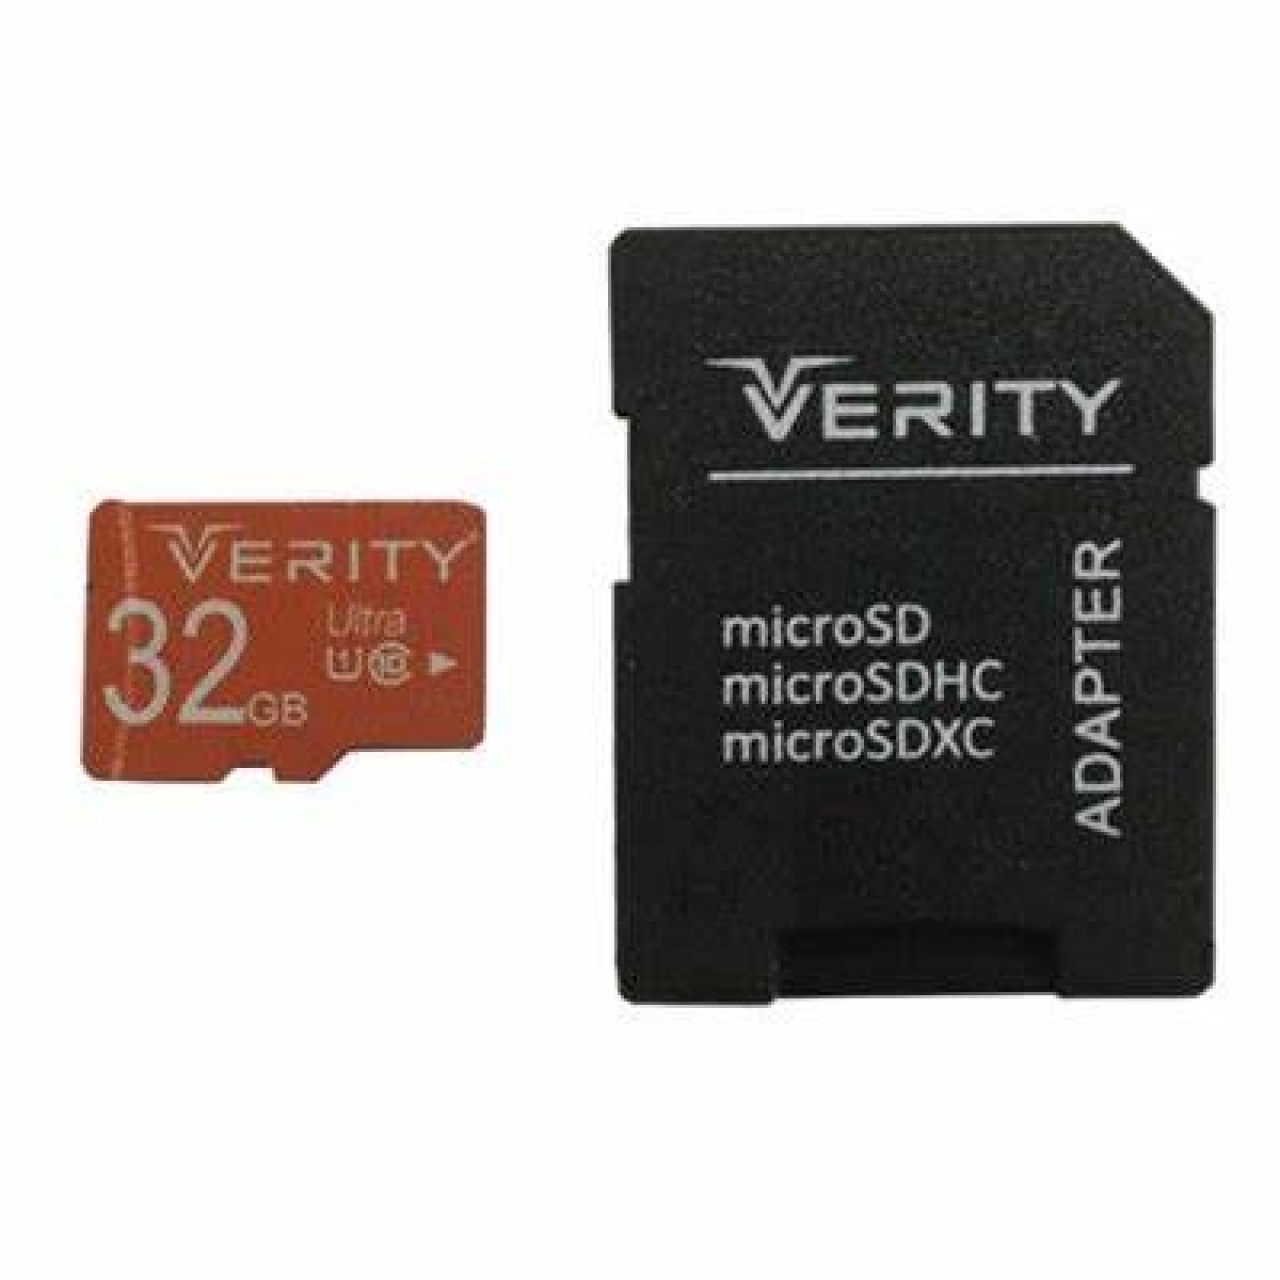 کارت حافظه microSDHC وریتی مدل 633X کلاس 10 استاندارد UHS-I U1 سرعت 95MBps ظرفیت 32 گیگابایت همراه با آداپتور SD